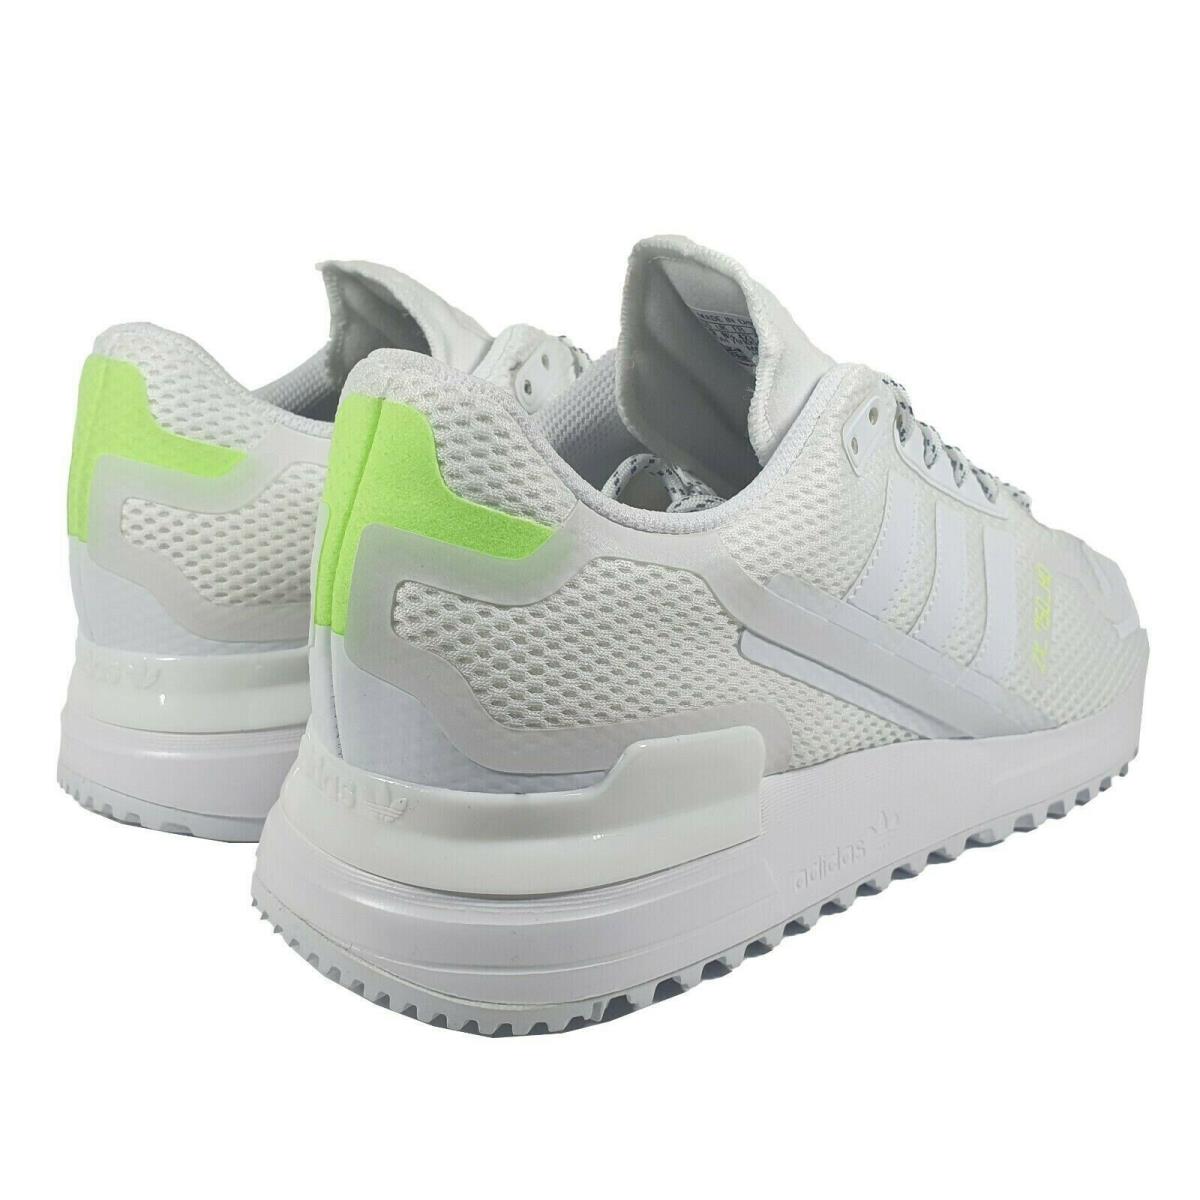 Adidas shoes Originals - White 1